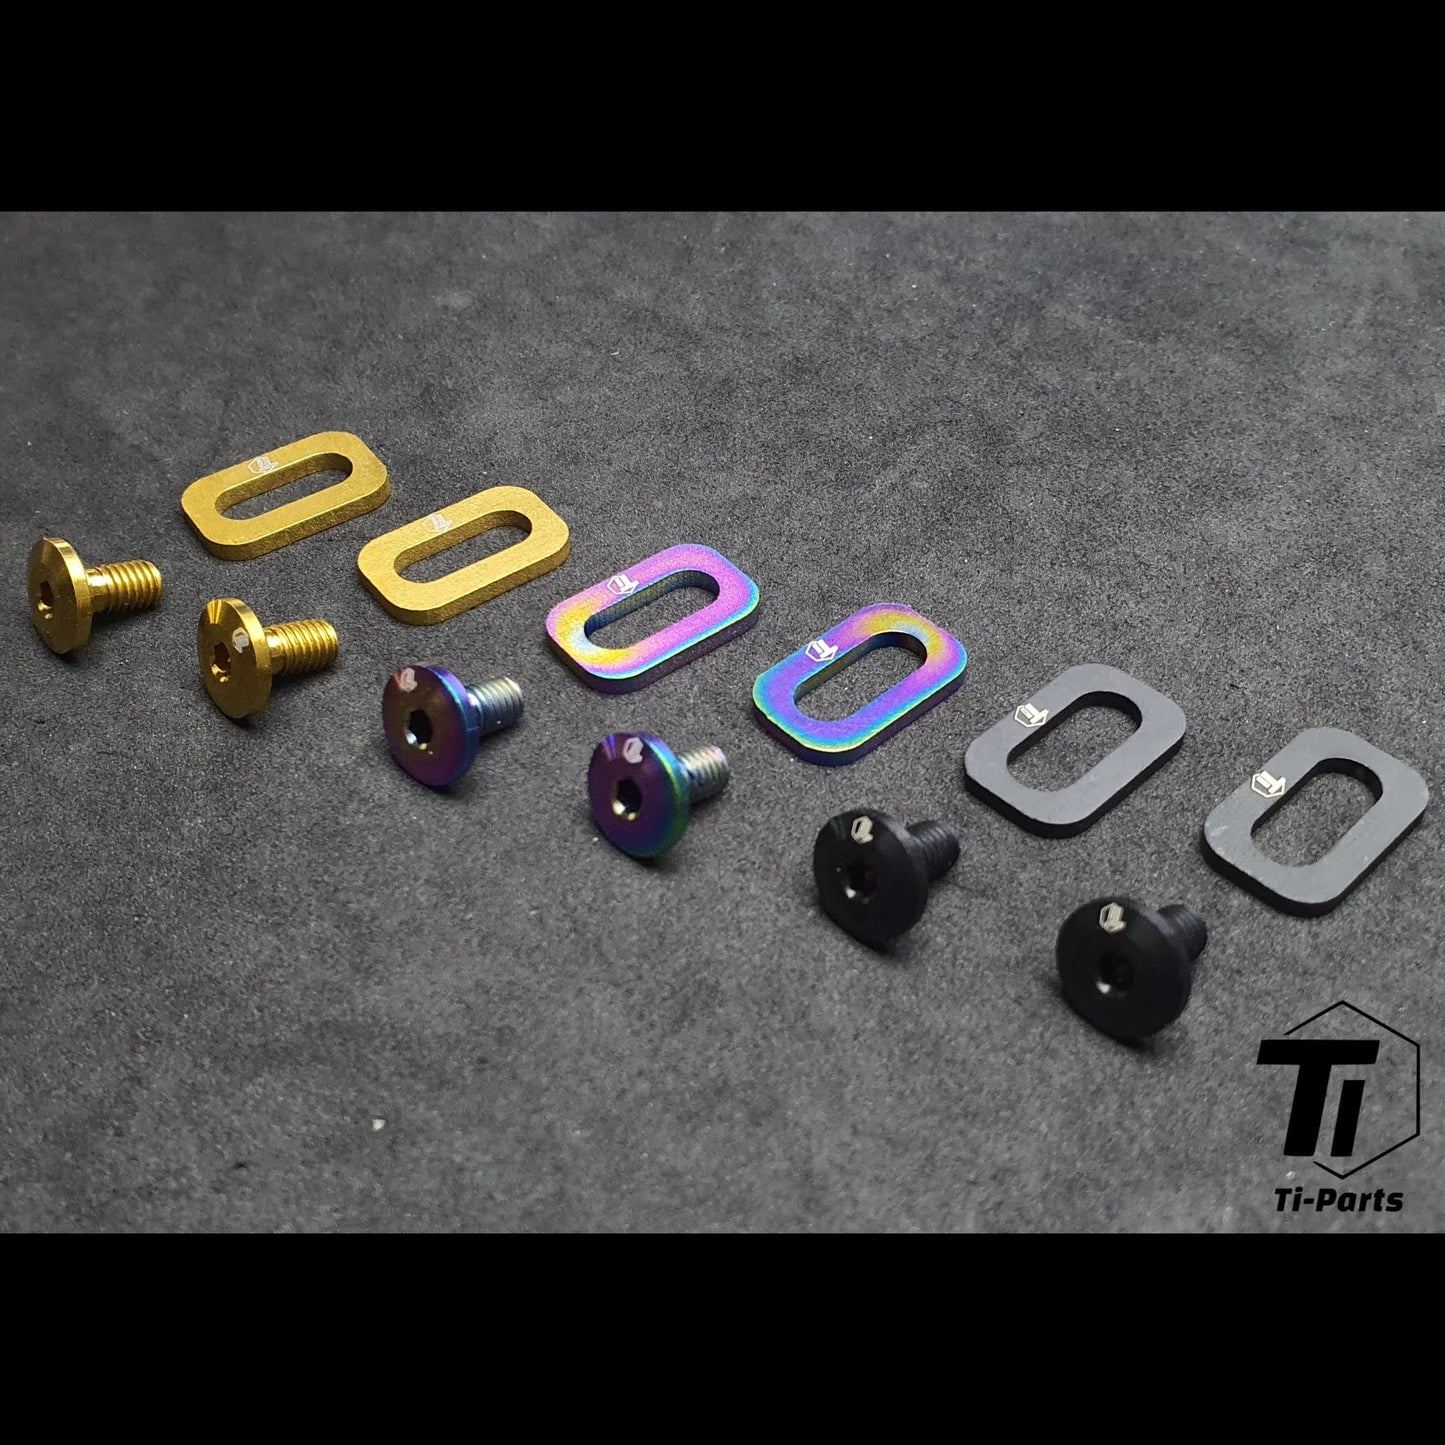 Kit de tornillos para calas con apariencia de titanio | Pedales de carretera Keo 2 Max Blade | Titanio Grado 5 Singapur